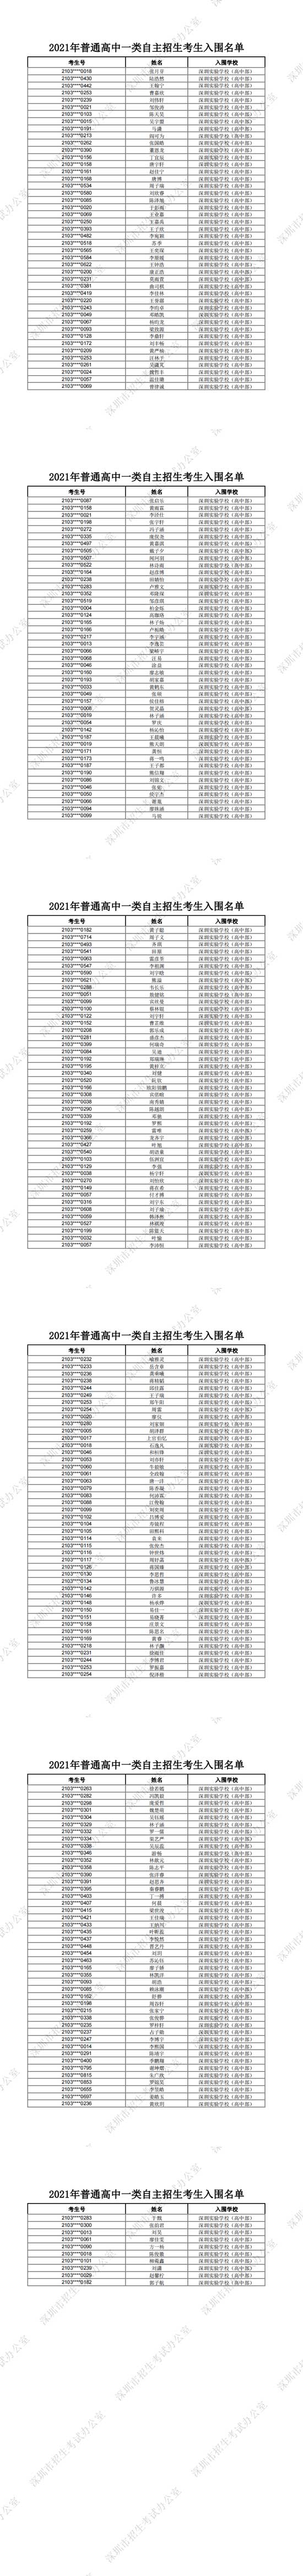 深圳实验学校高中部2021年普通高中一类自主招生考生入围名单一览